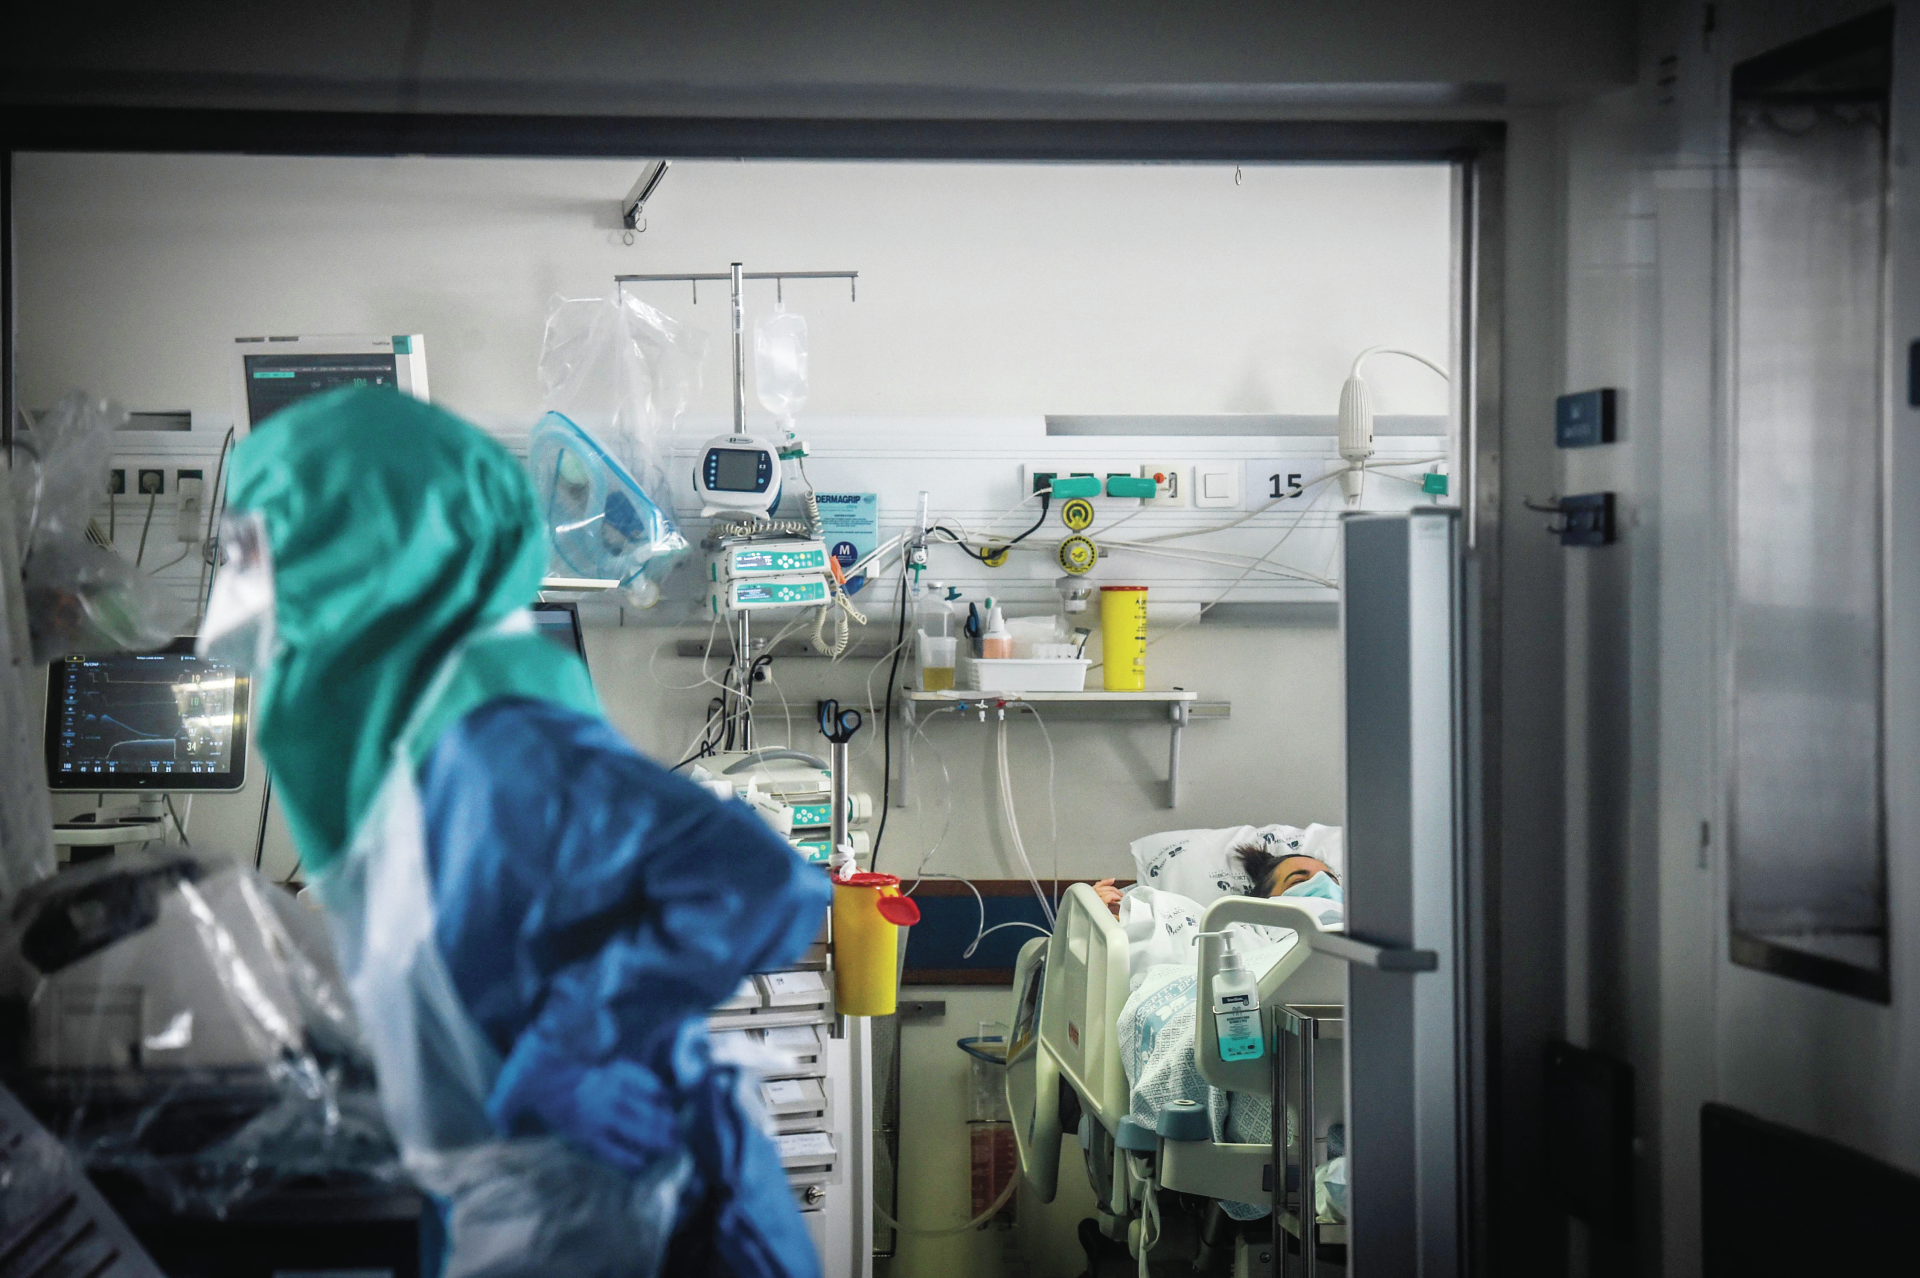 Surto no Hospital de Santarém ‘afastou’ mais de 80 profissionais de saúde